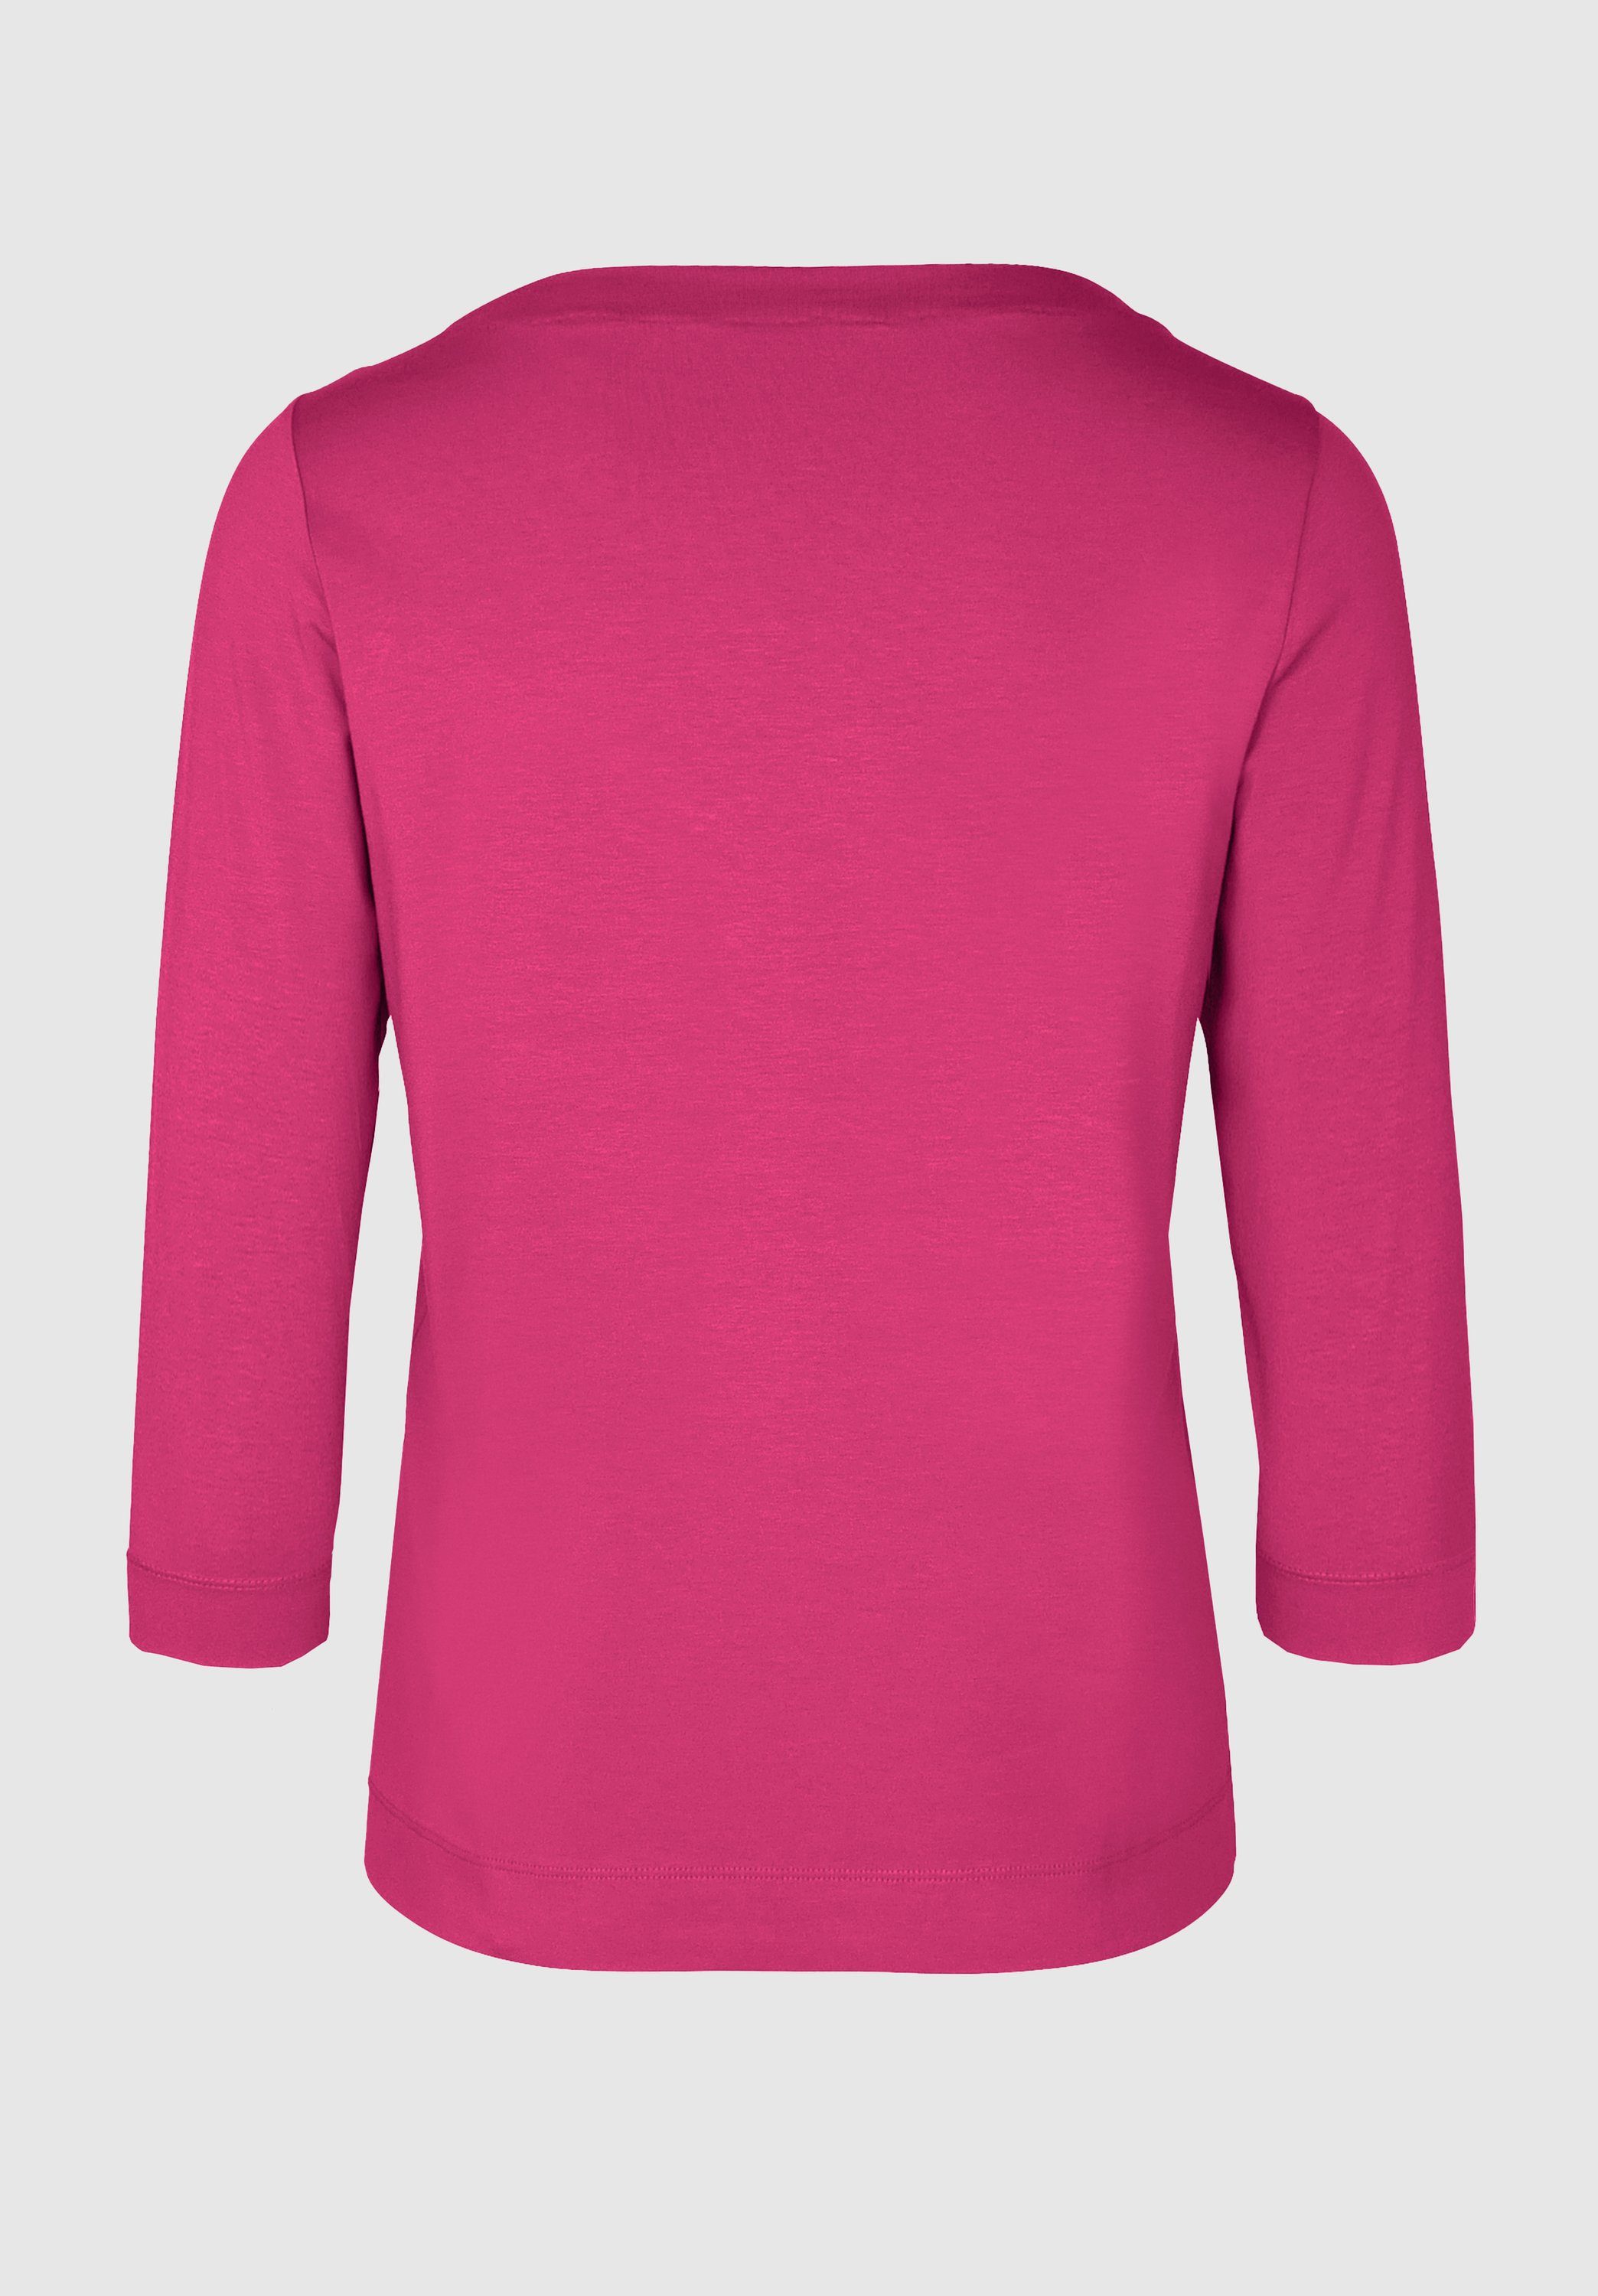 in Trendfarben und modernem DIELLA bianca pink Look angesagten cool 3/4-Arm-Shirt